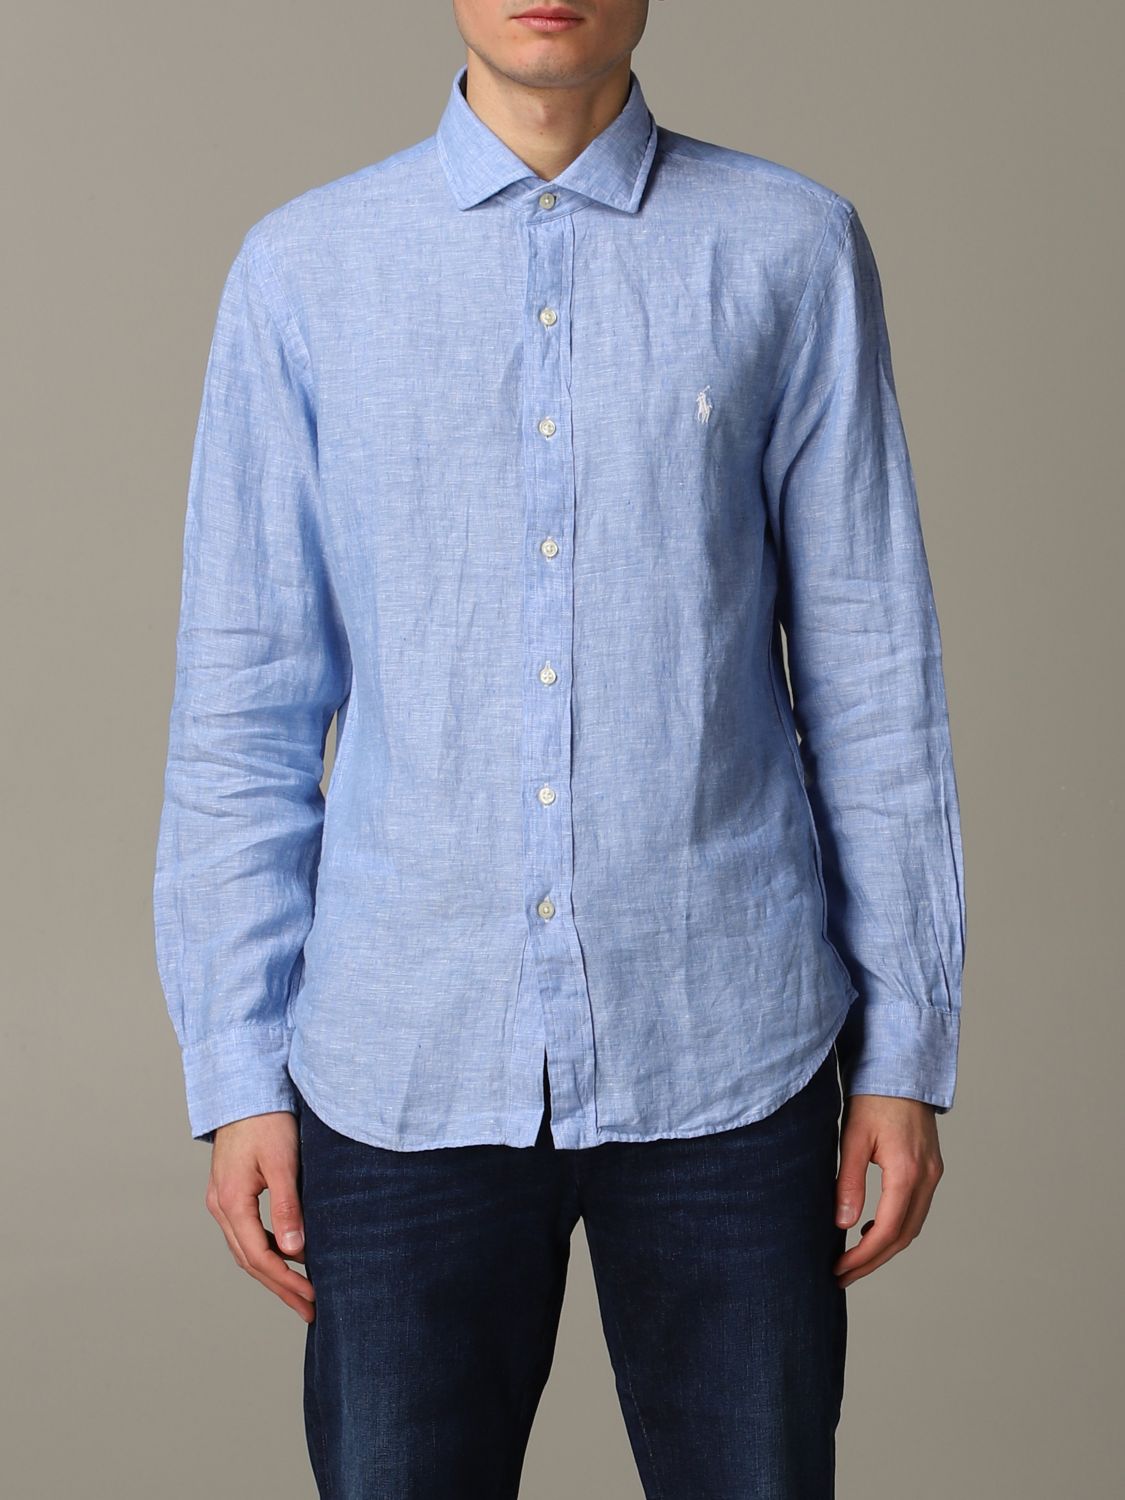 Camisa Polo Ralph Lauren: Camisa Polo Ralph Lauren para hombre azul claro 1